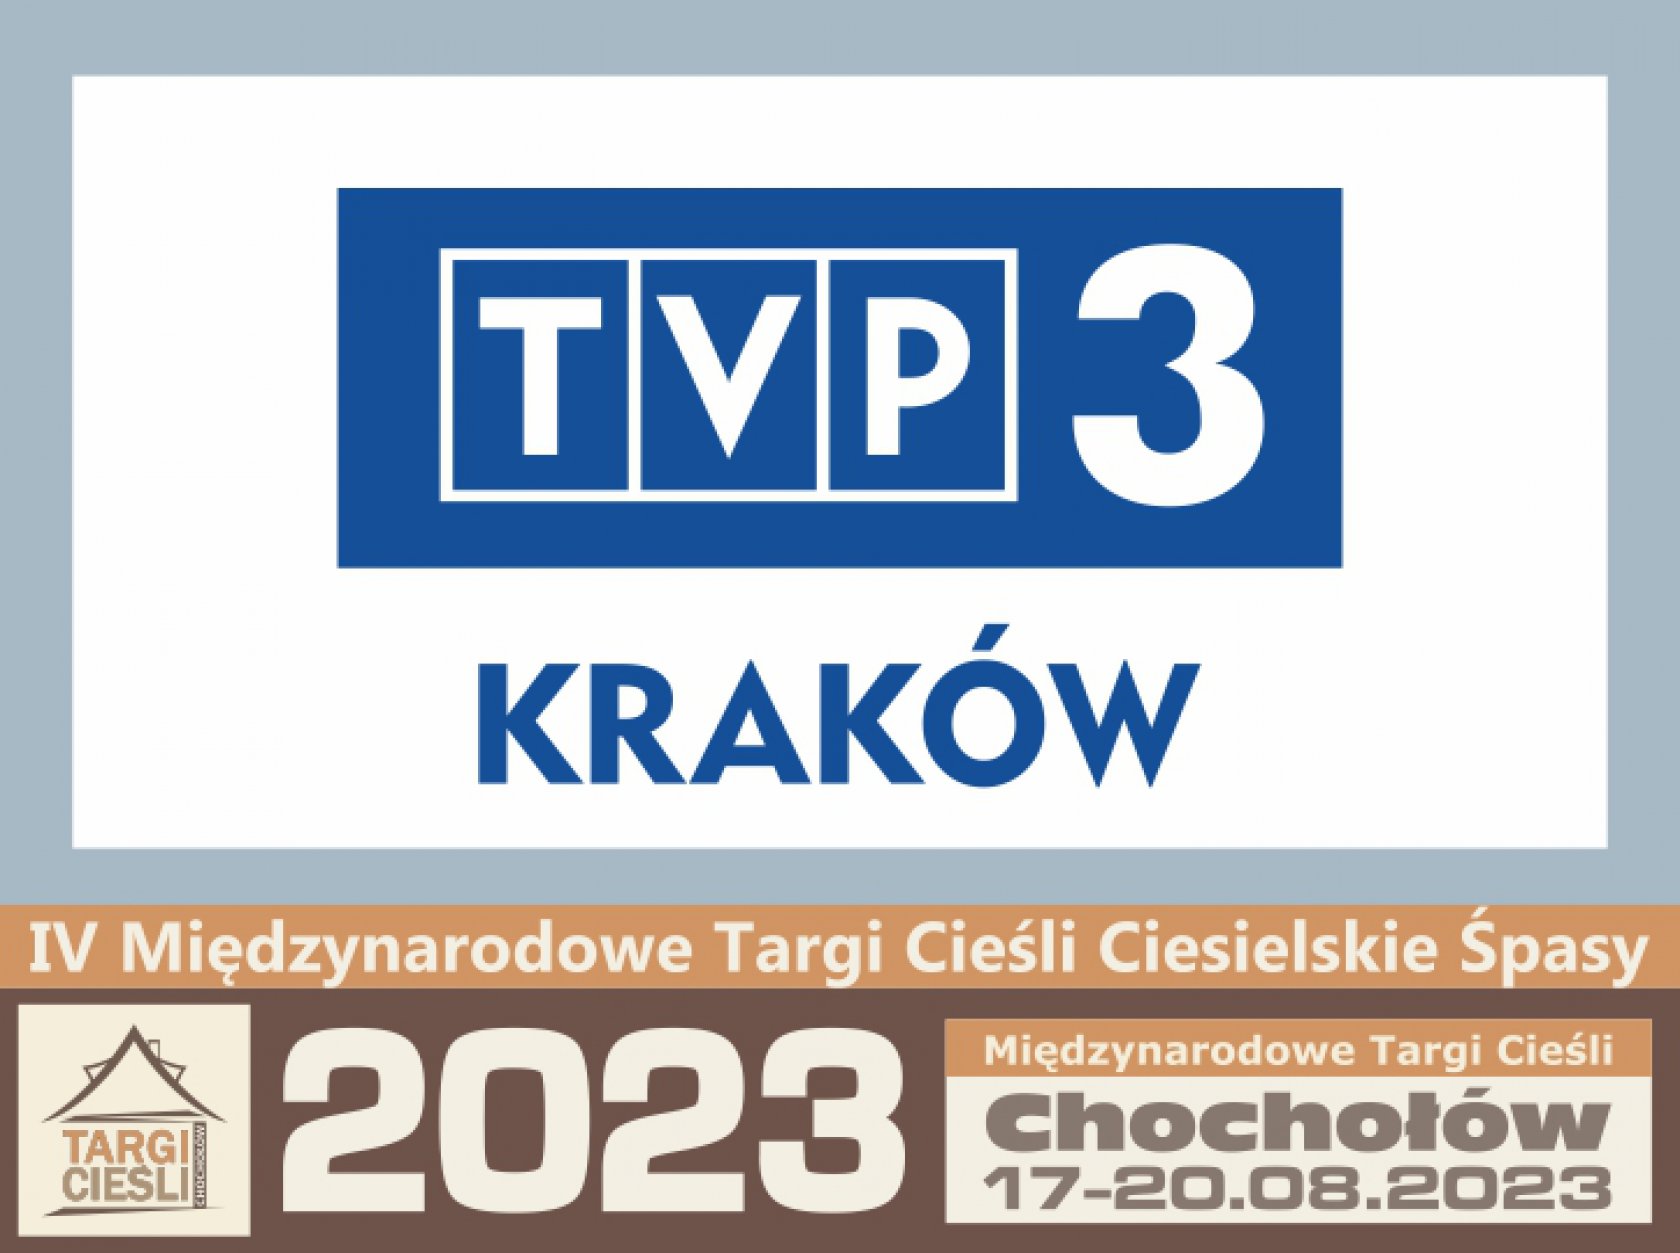 Zdjęcie TVP3 KRAKÓW pokaże wydarzenia w Chochołowie